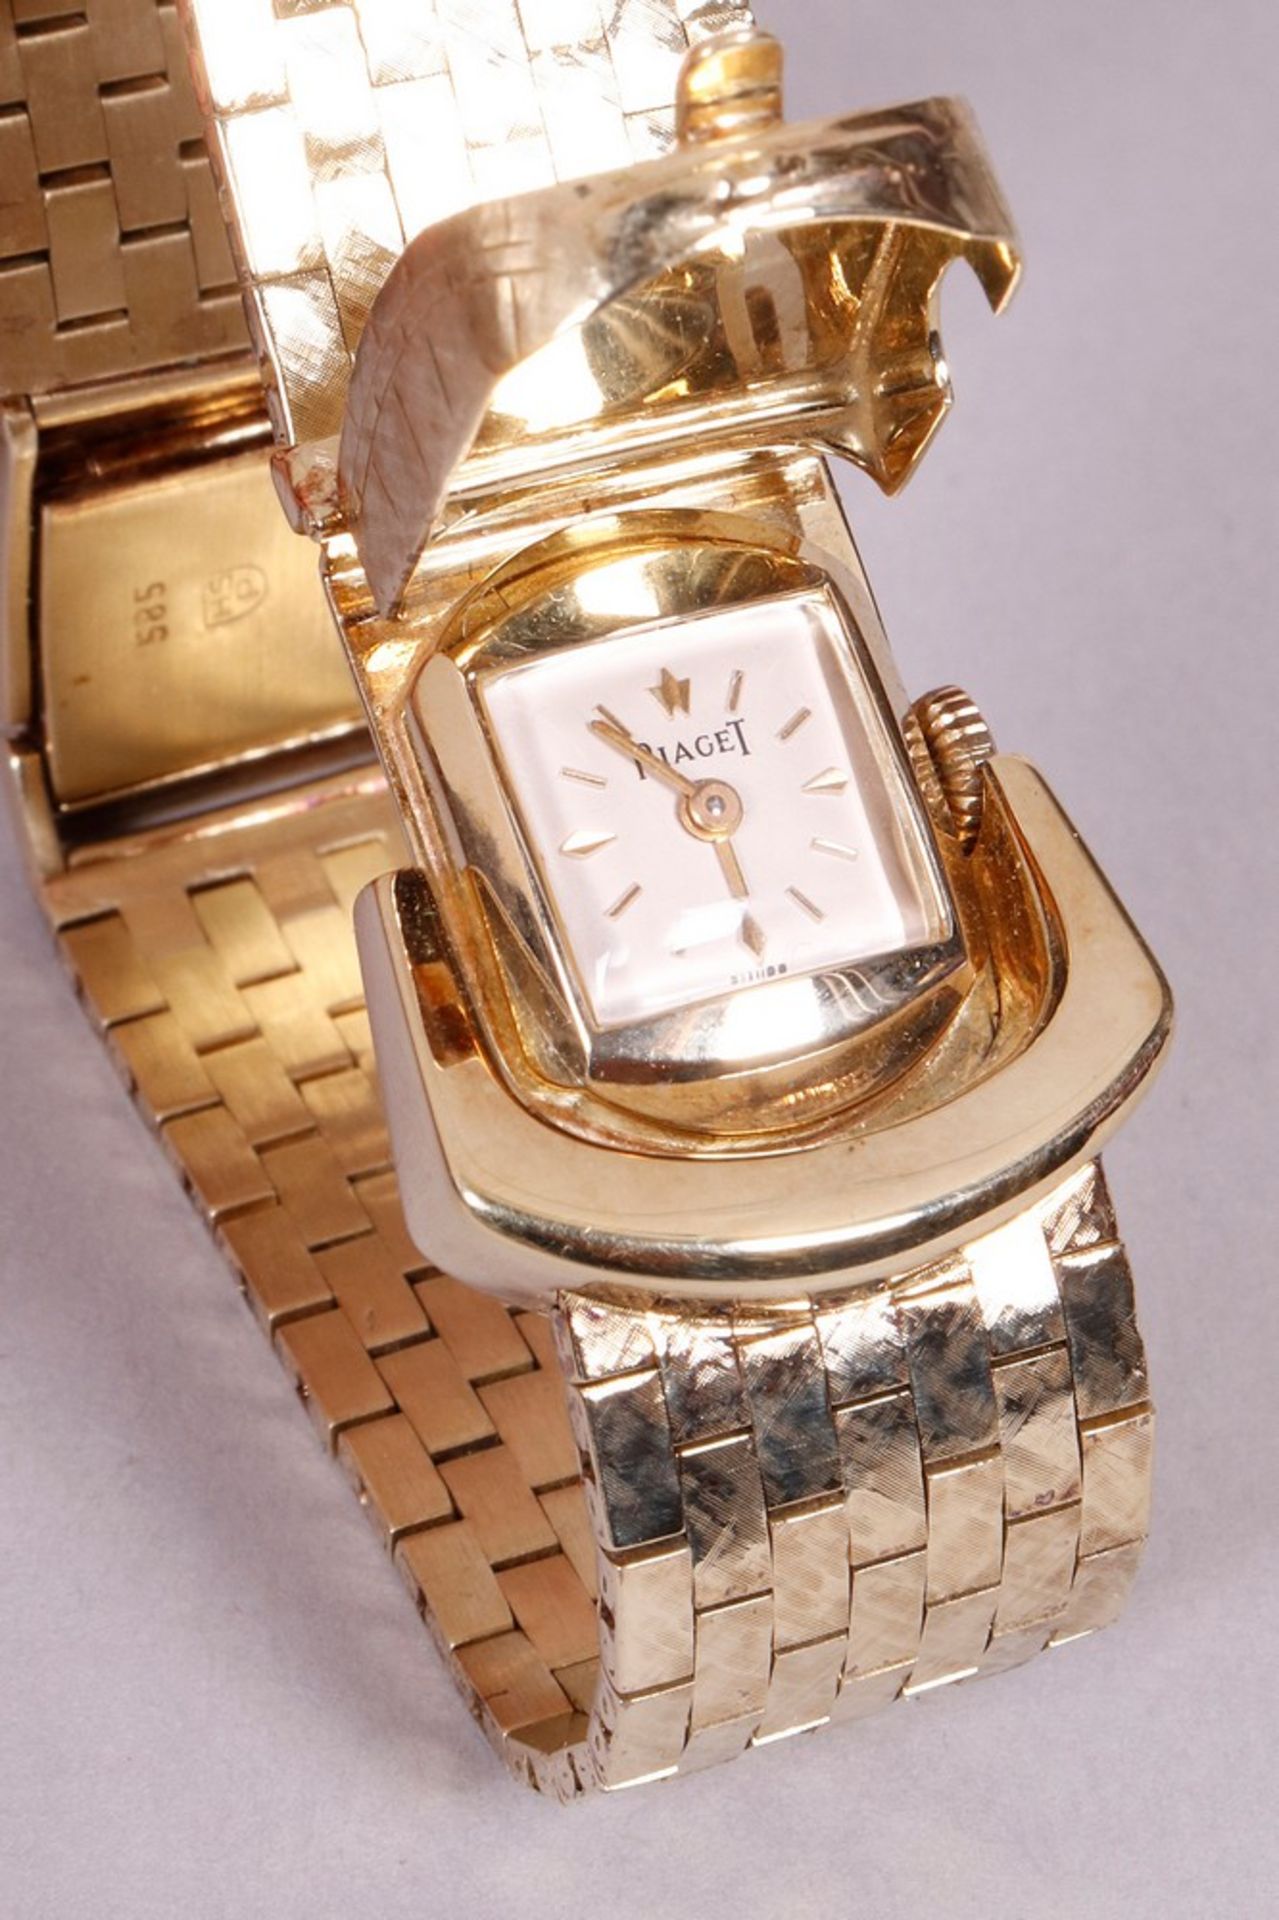 Ladies' wristwatch, 585 gold, Piaget, 1960s - Image 3 of 5